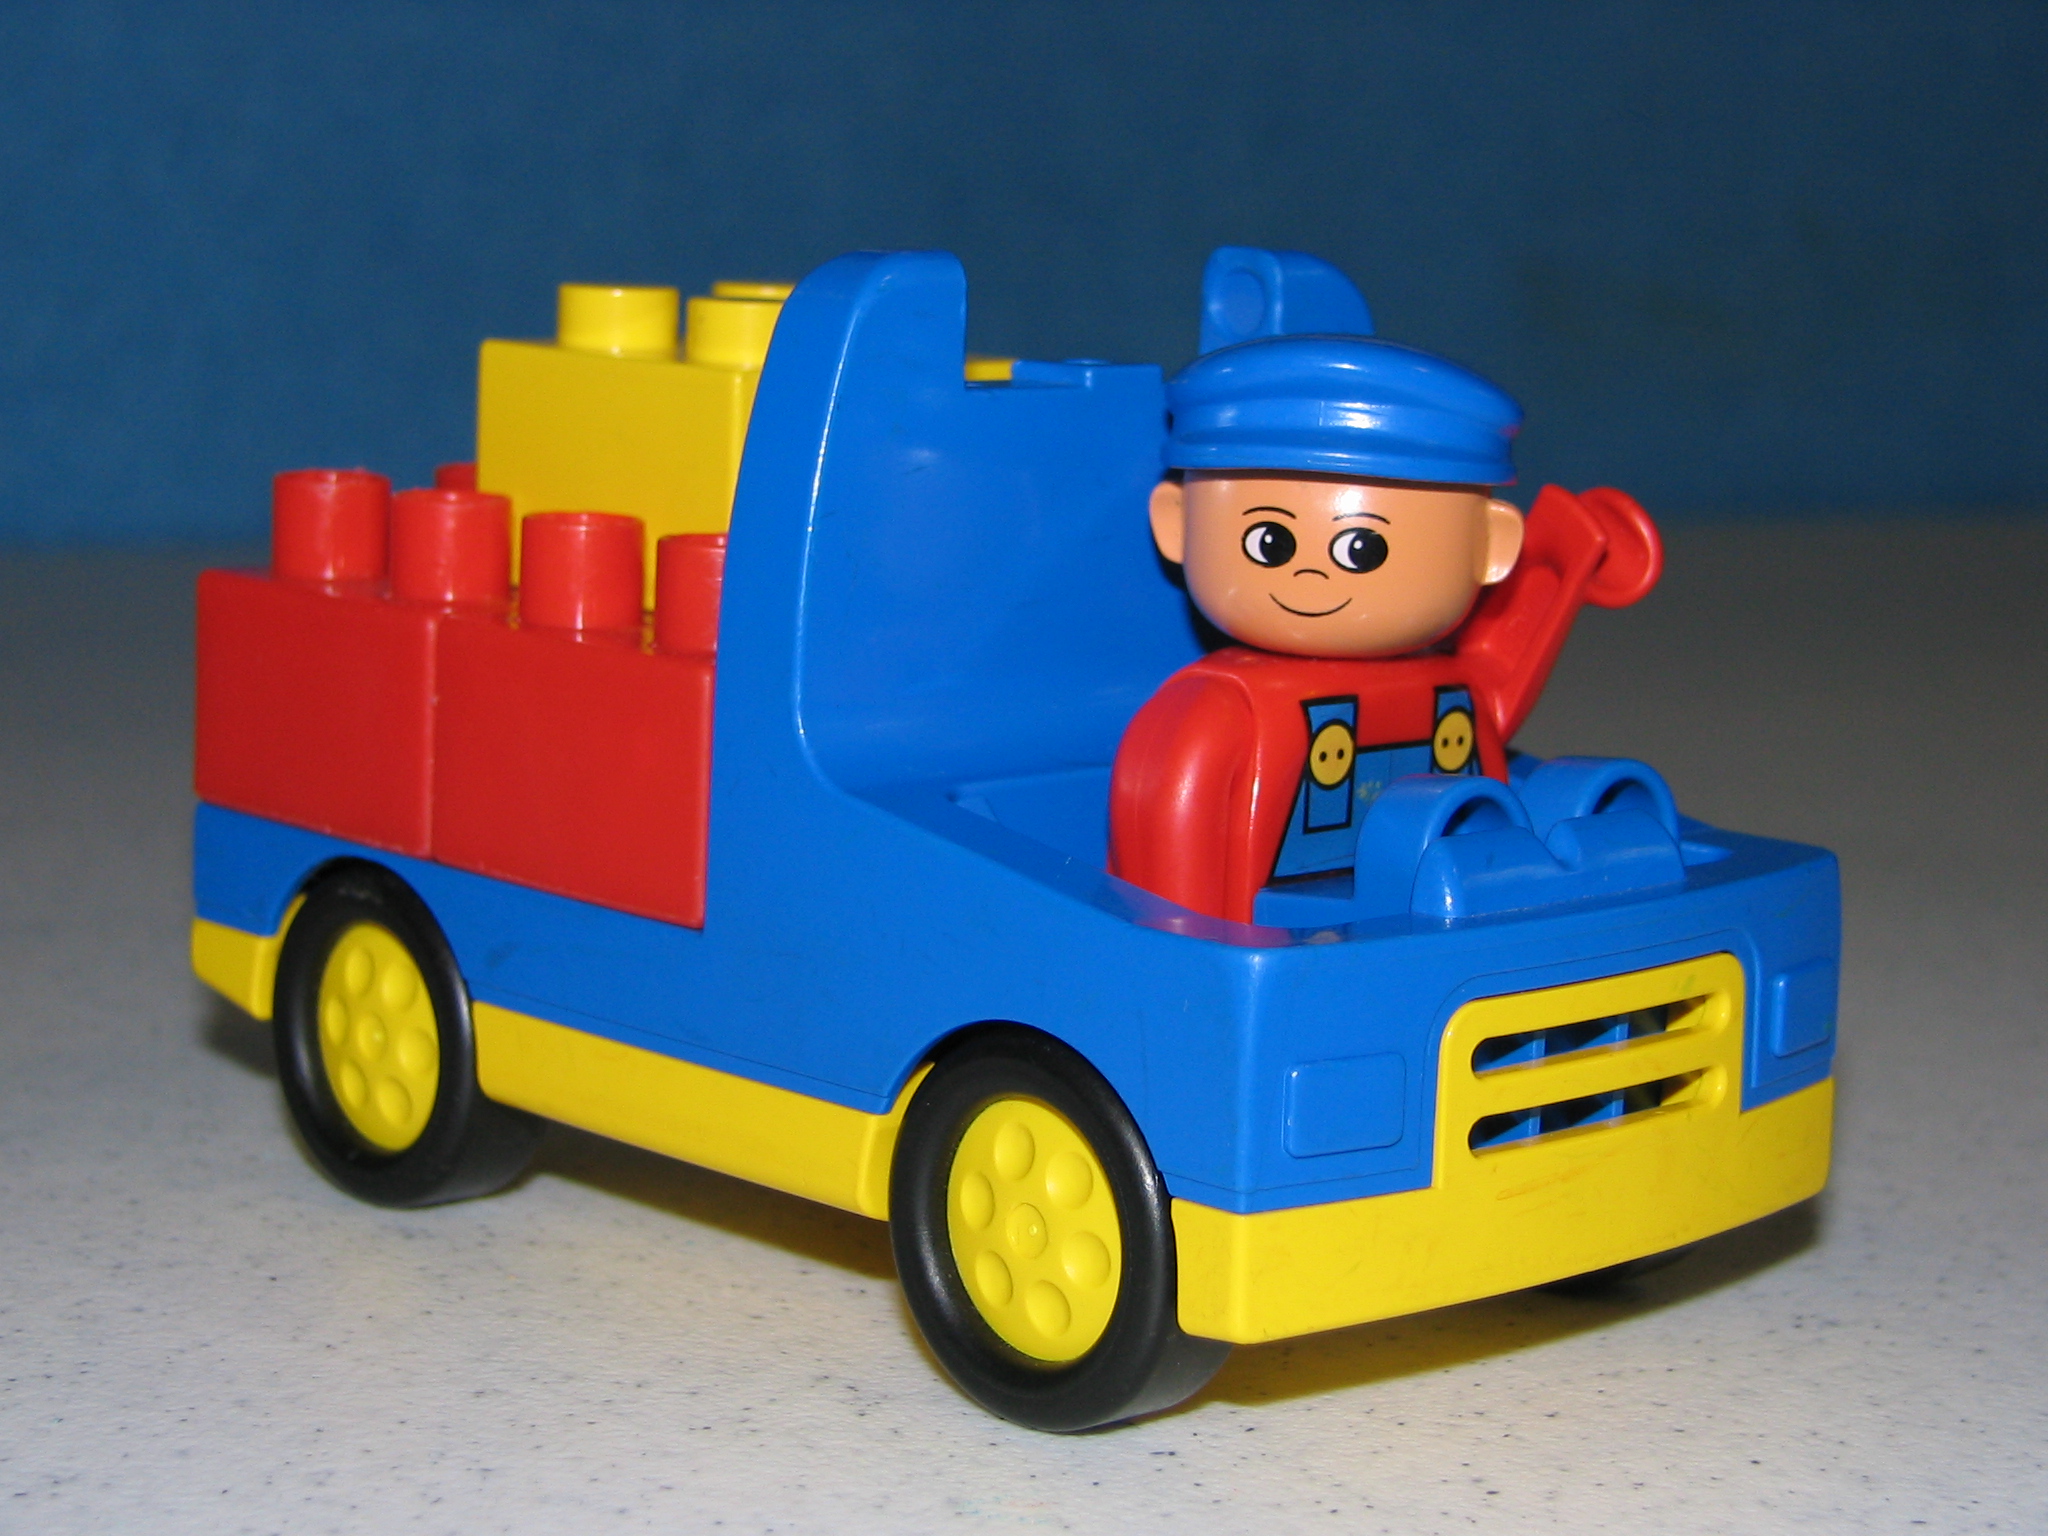 Lego bricks in a Lego truck